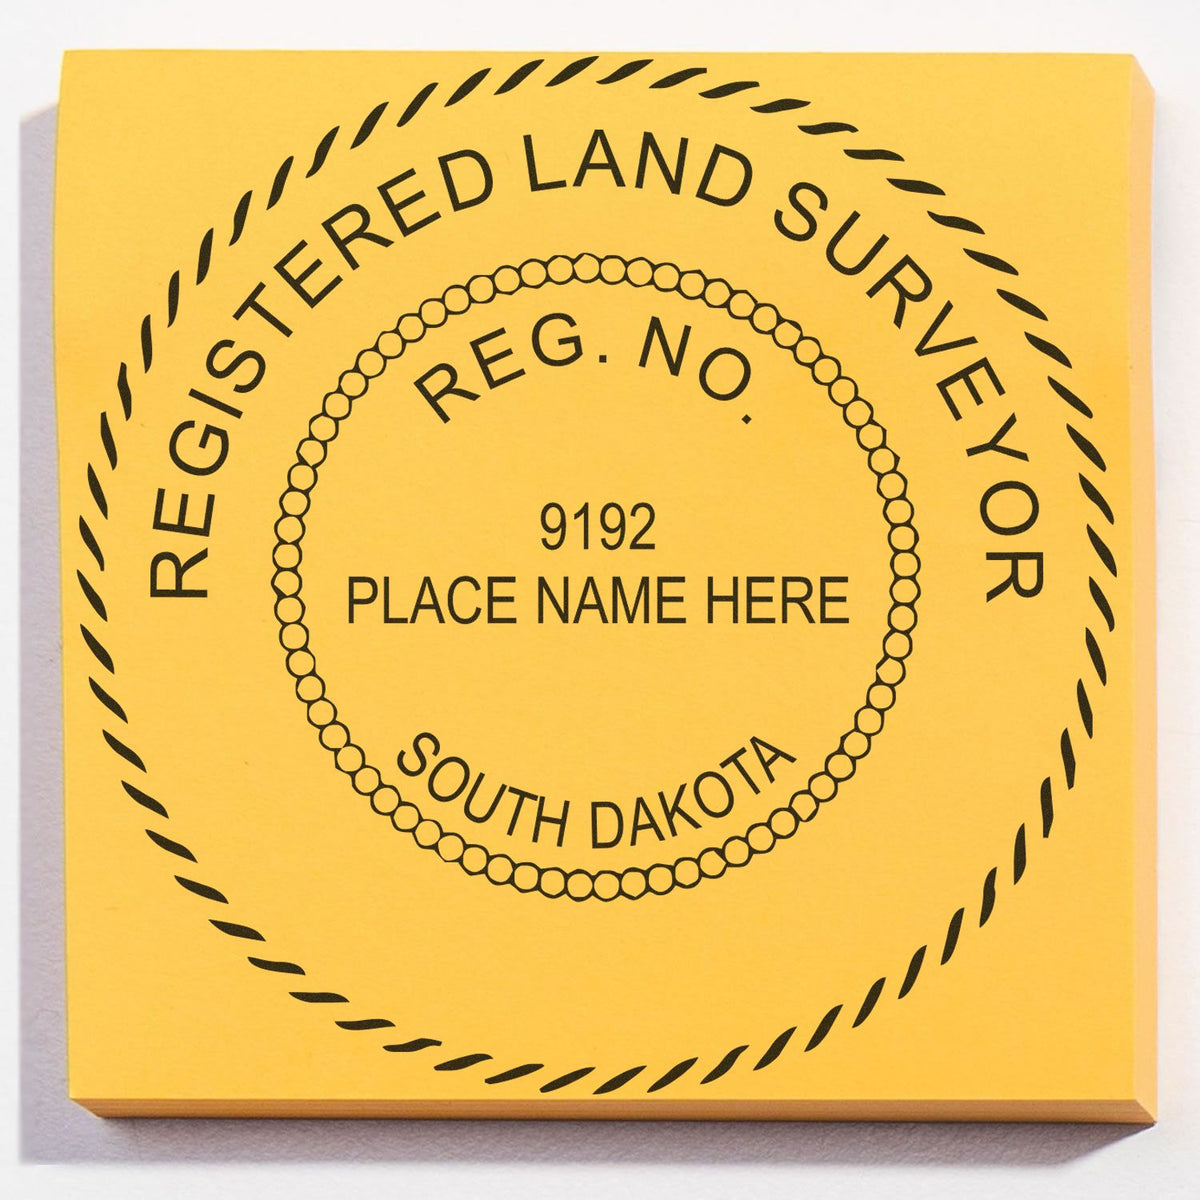 South Dakota Land Surveyor Seal Stamp In Use Photo